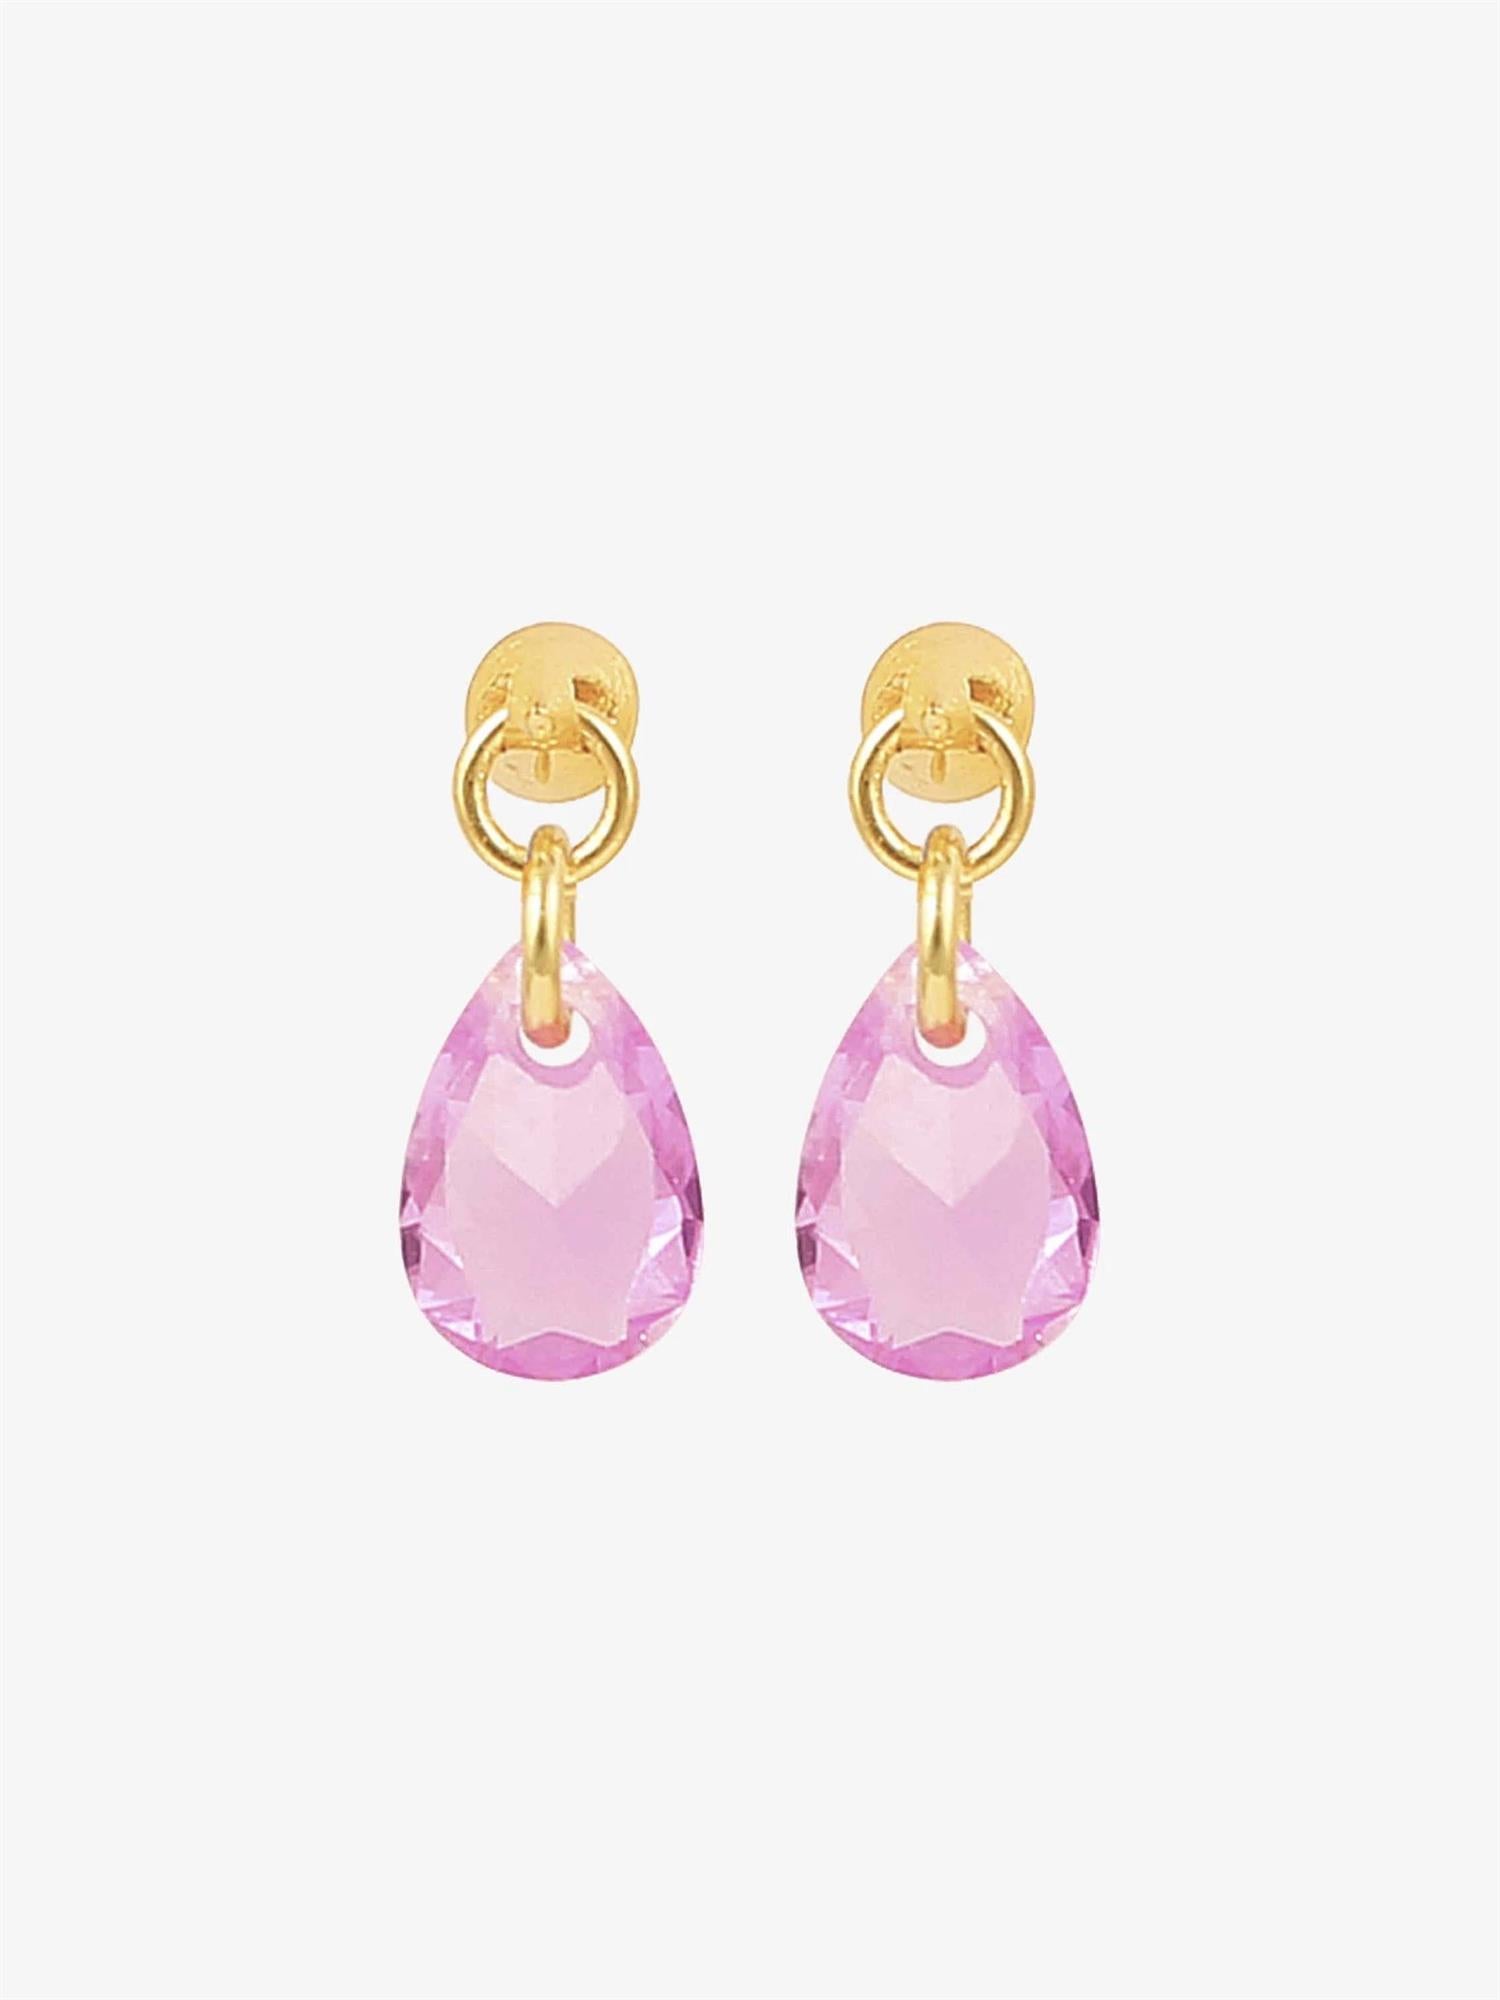 Pink raindrop earrings